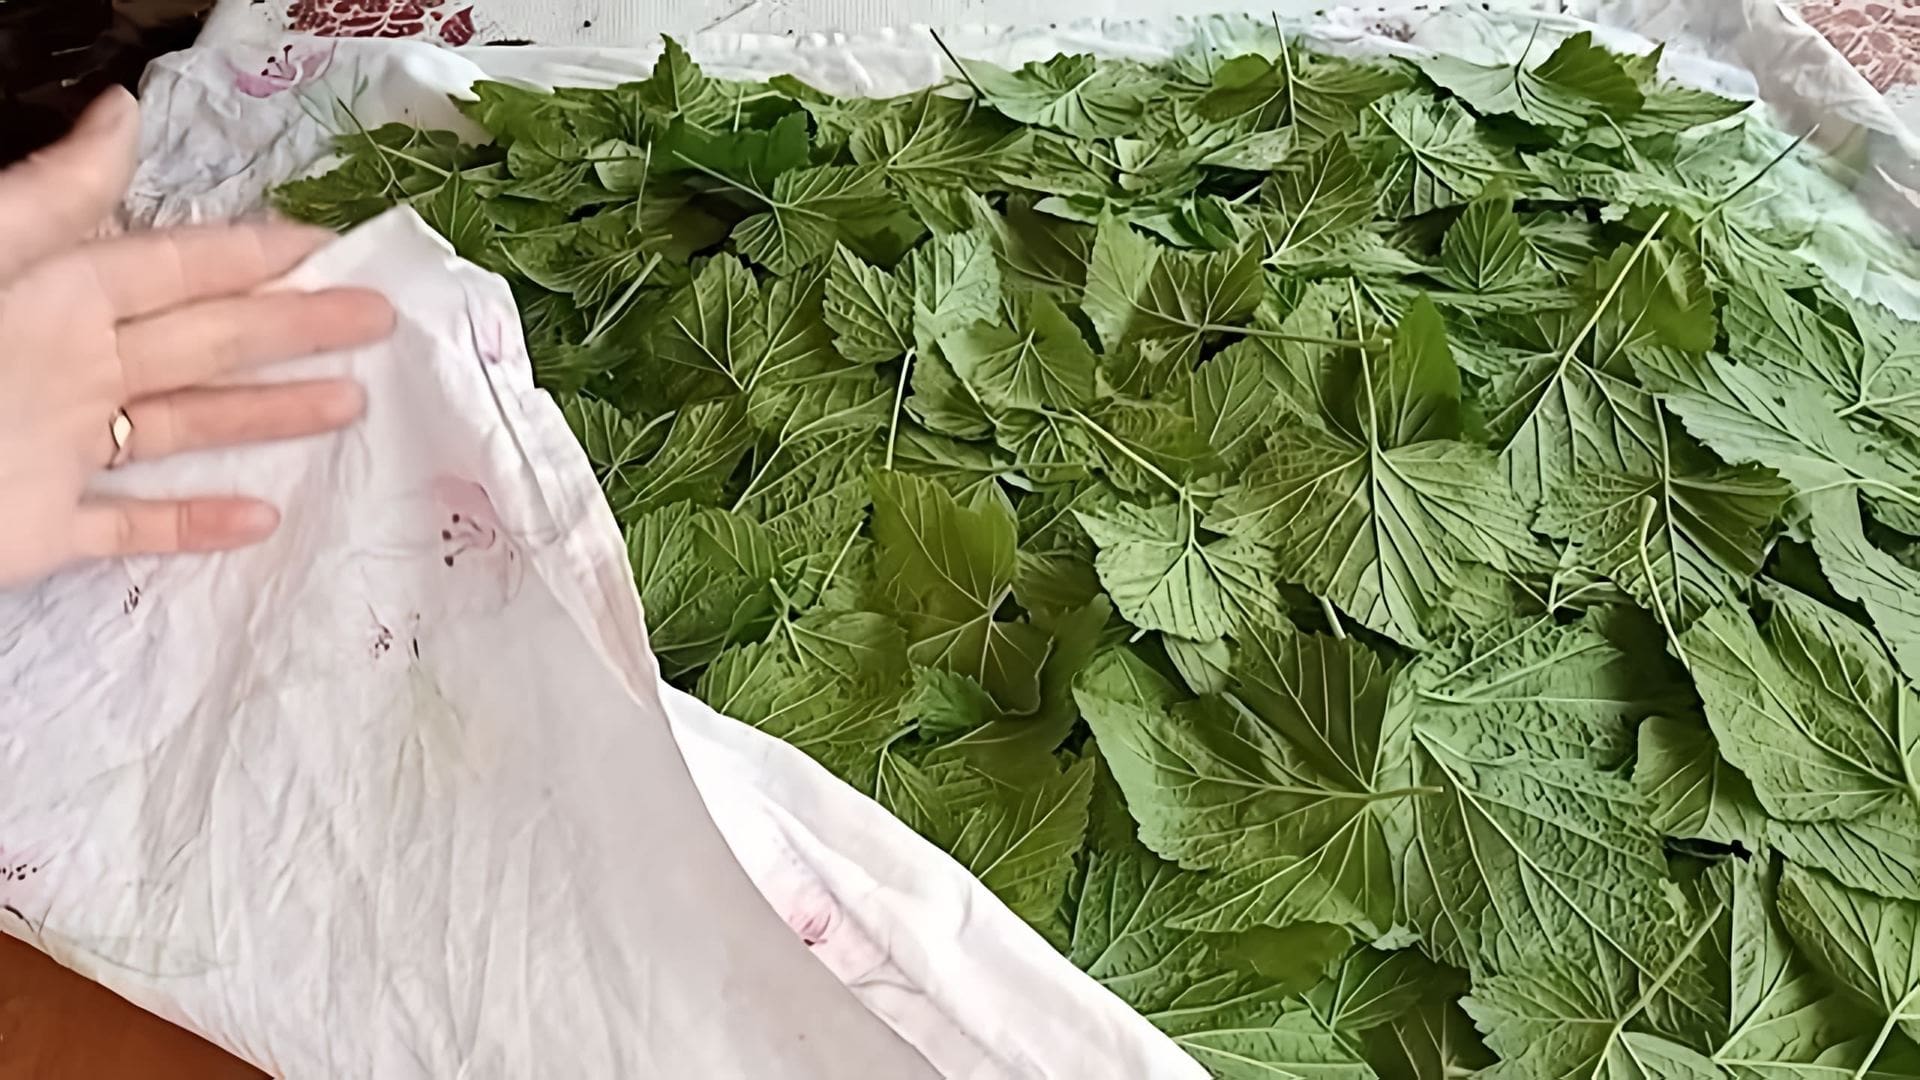 В этом видео рассказывается о процессе ферментации листьев смородины для приготовления чая